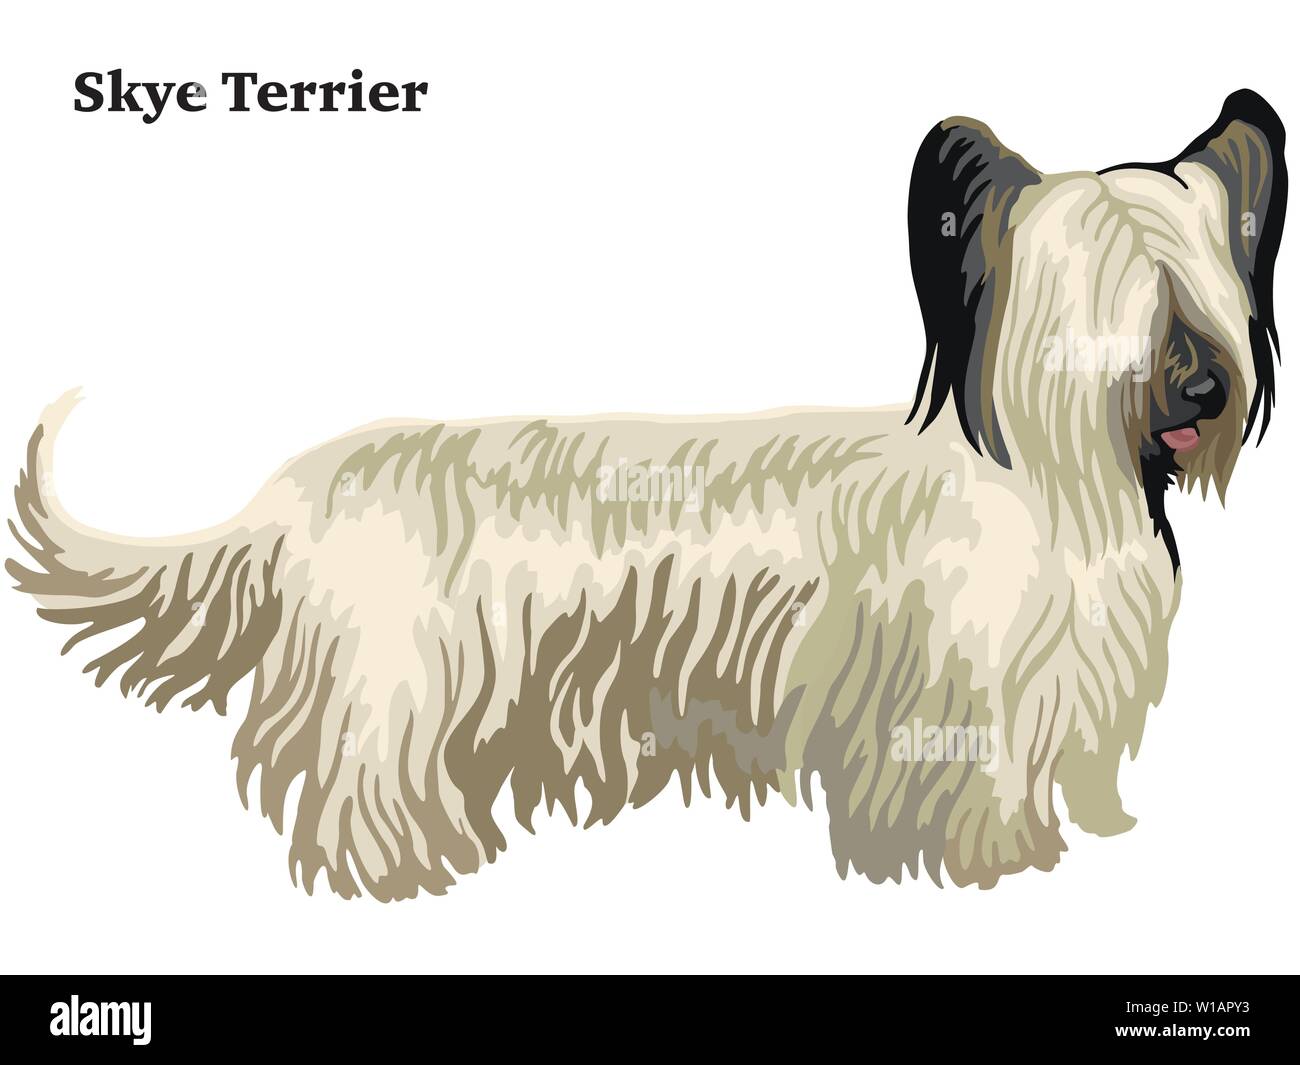 Portrait décoratives colorées de l'article profil de Skye Terrier, vector illustration isolé sur fond blanc Illustration de Vecteur